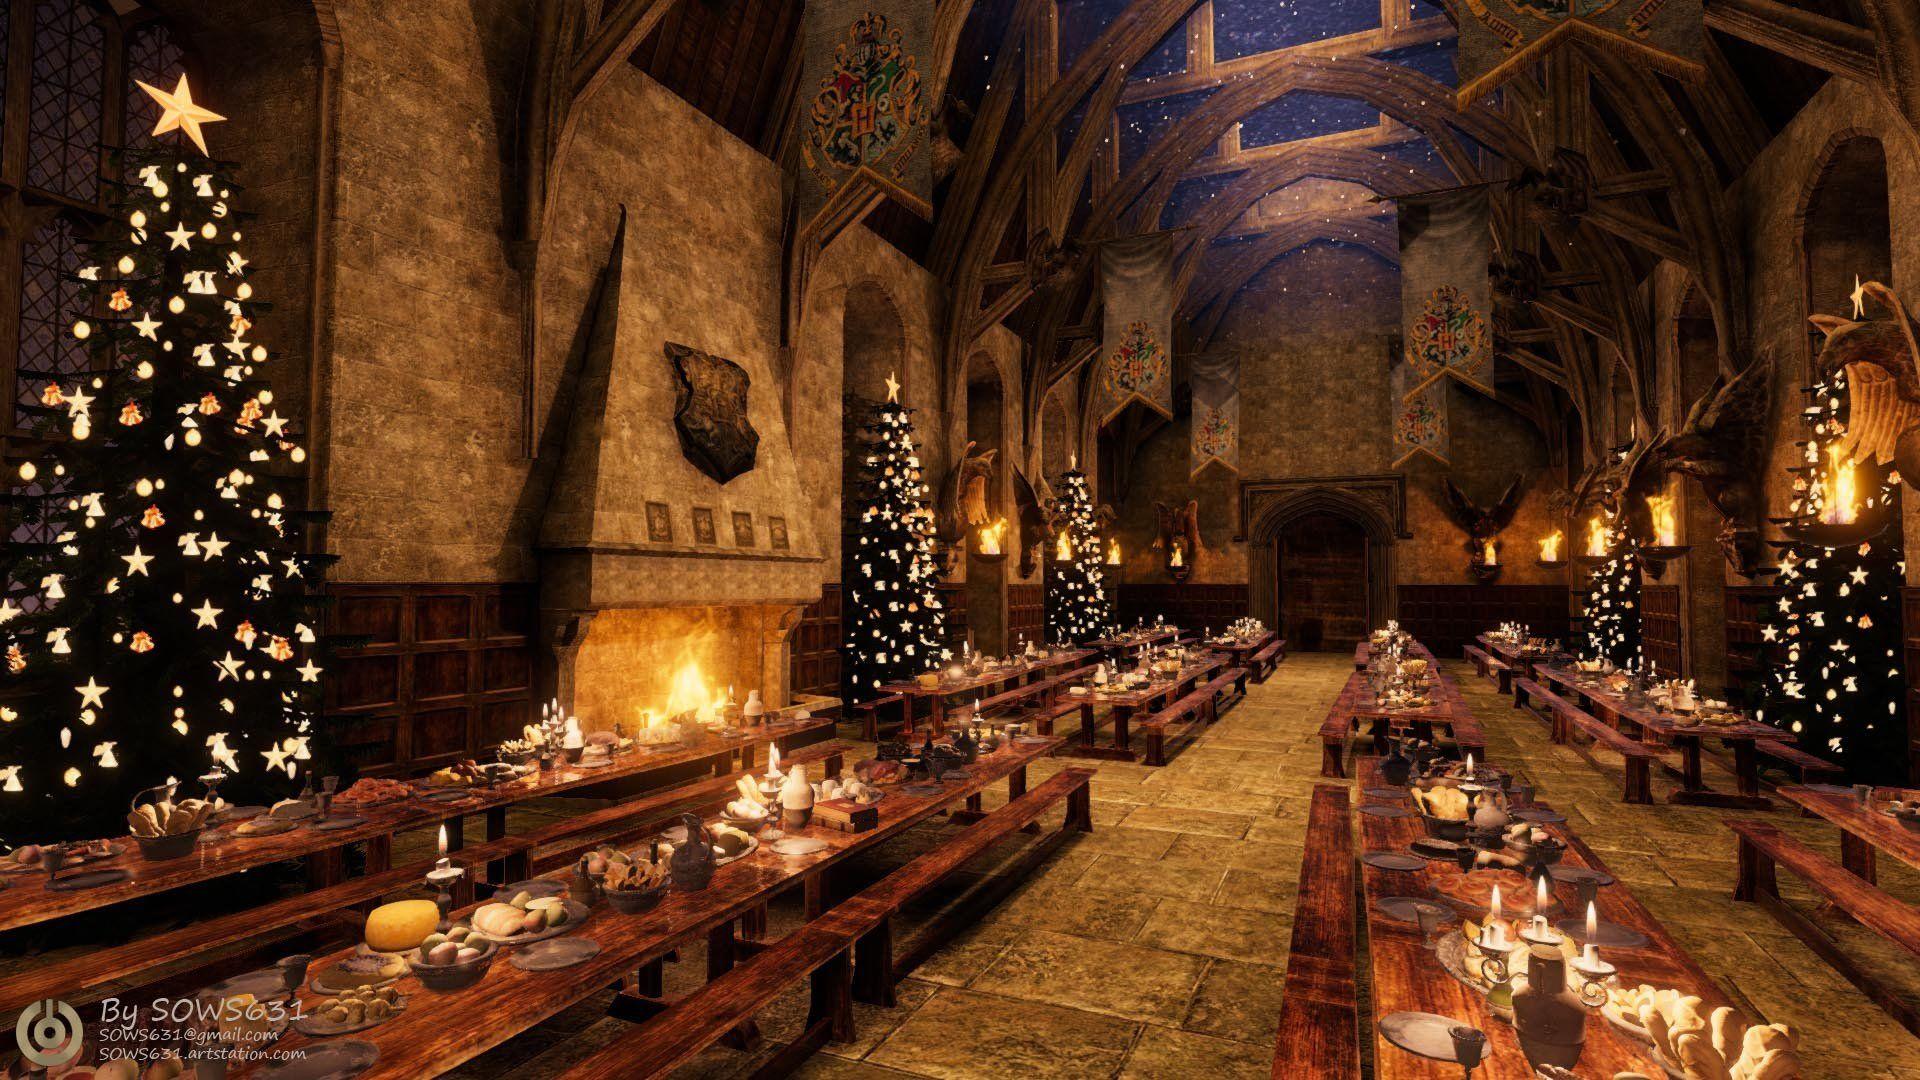 Hãy cùng đón Giáng sinh tại Hogwarts nơi thần thoại và phép thuật cùng hội sinh viên của nhà Gryffindor, Ravenclaw, Slytherin và Hufflepuff hội tụ. Vào Hogwarts, bạn sẽ được chìm đắm trong không khí lễ hội đón Noel cùng những màn trình diễn nhạc và ánh sáng đầy màu sắc. Tạo nên những kỷ niệm khó quên trong dịp Giáng sinh này nhé!